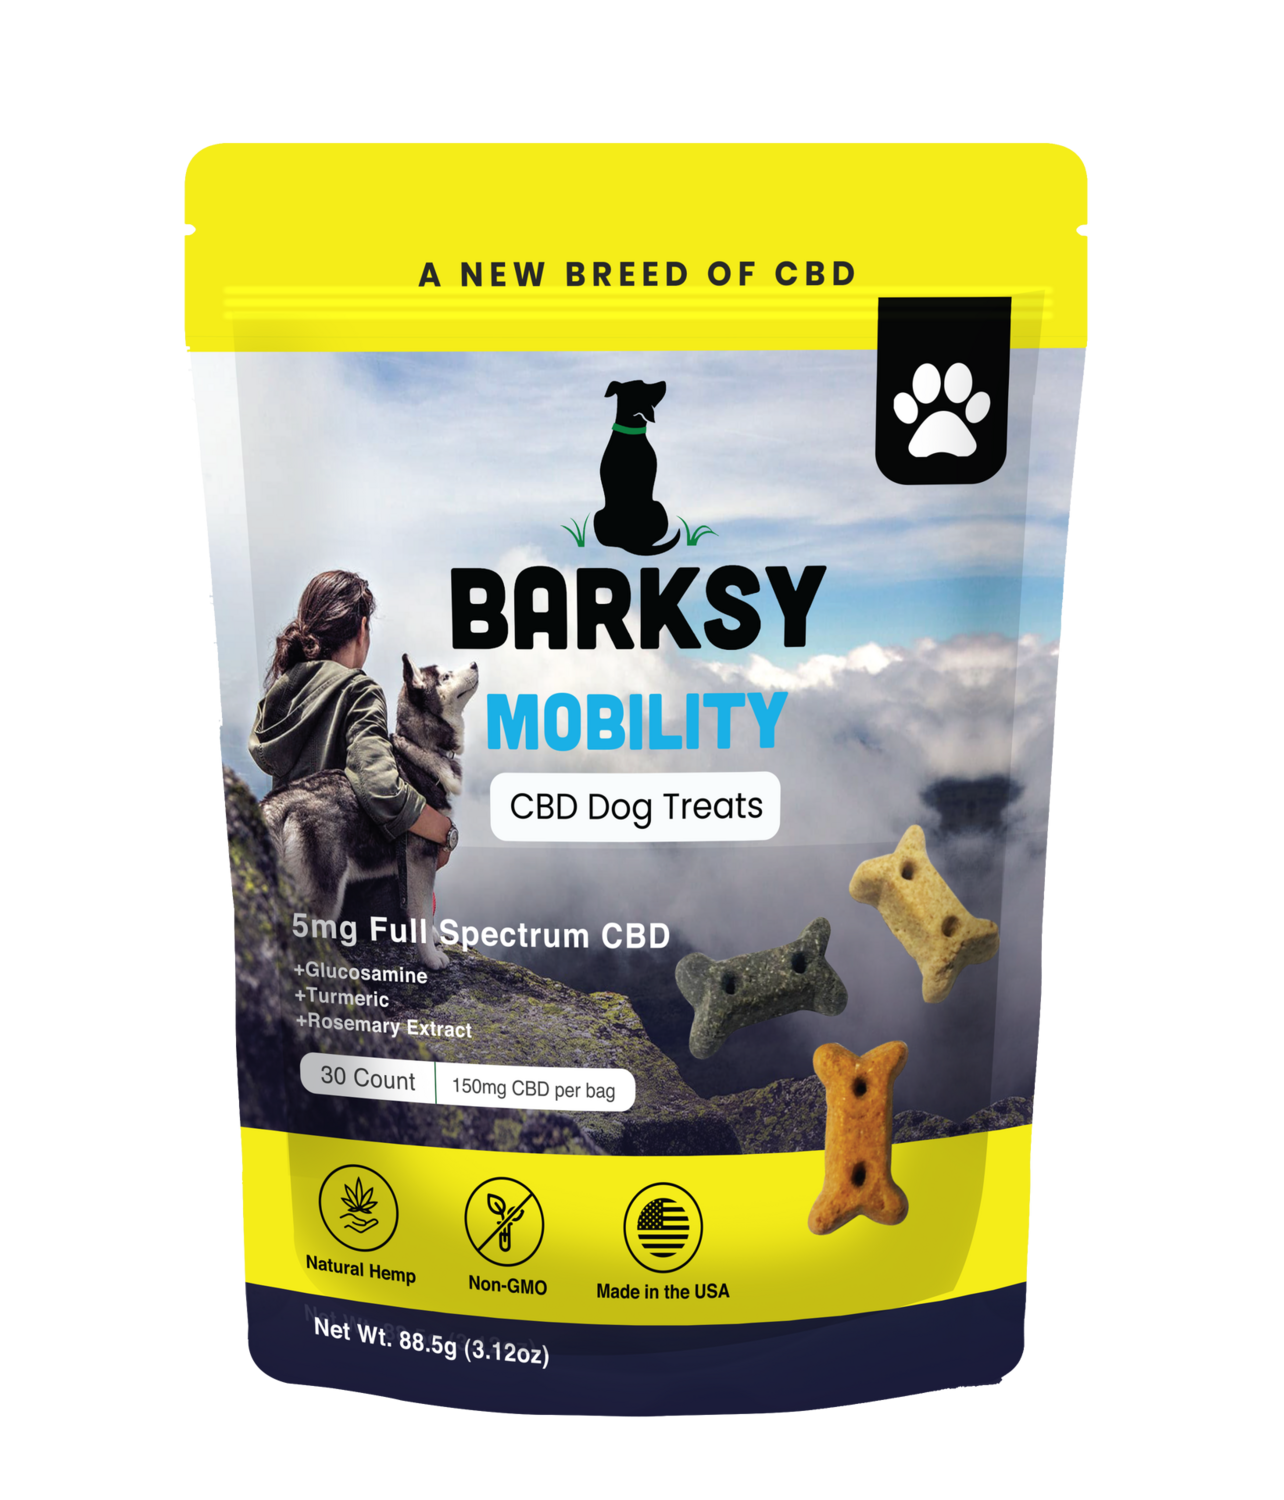 Barksy Mobility CBD Dog Treats with Glucosamine, Turmeric & Rosemary Extract